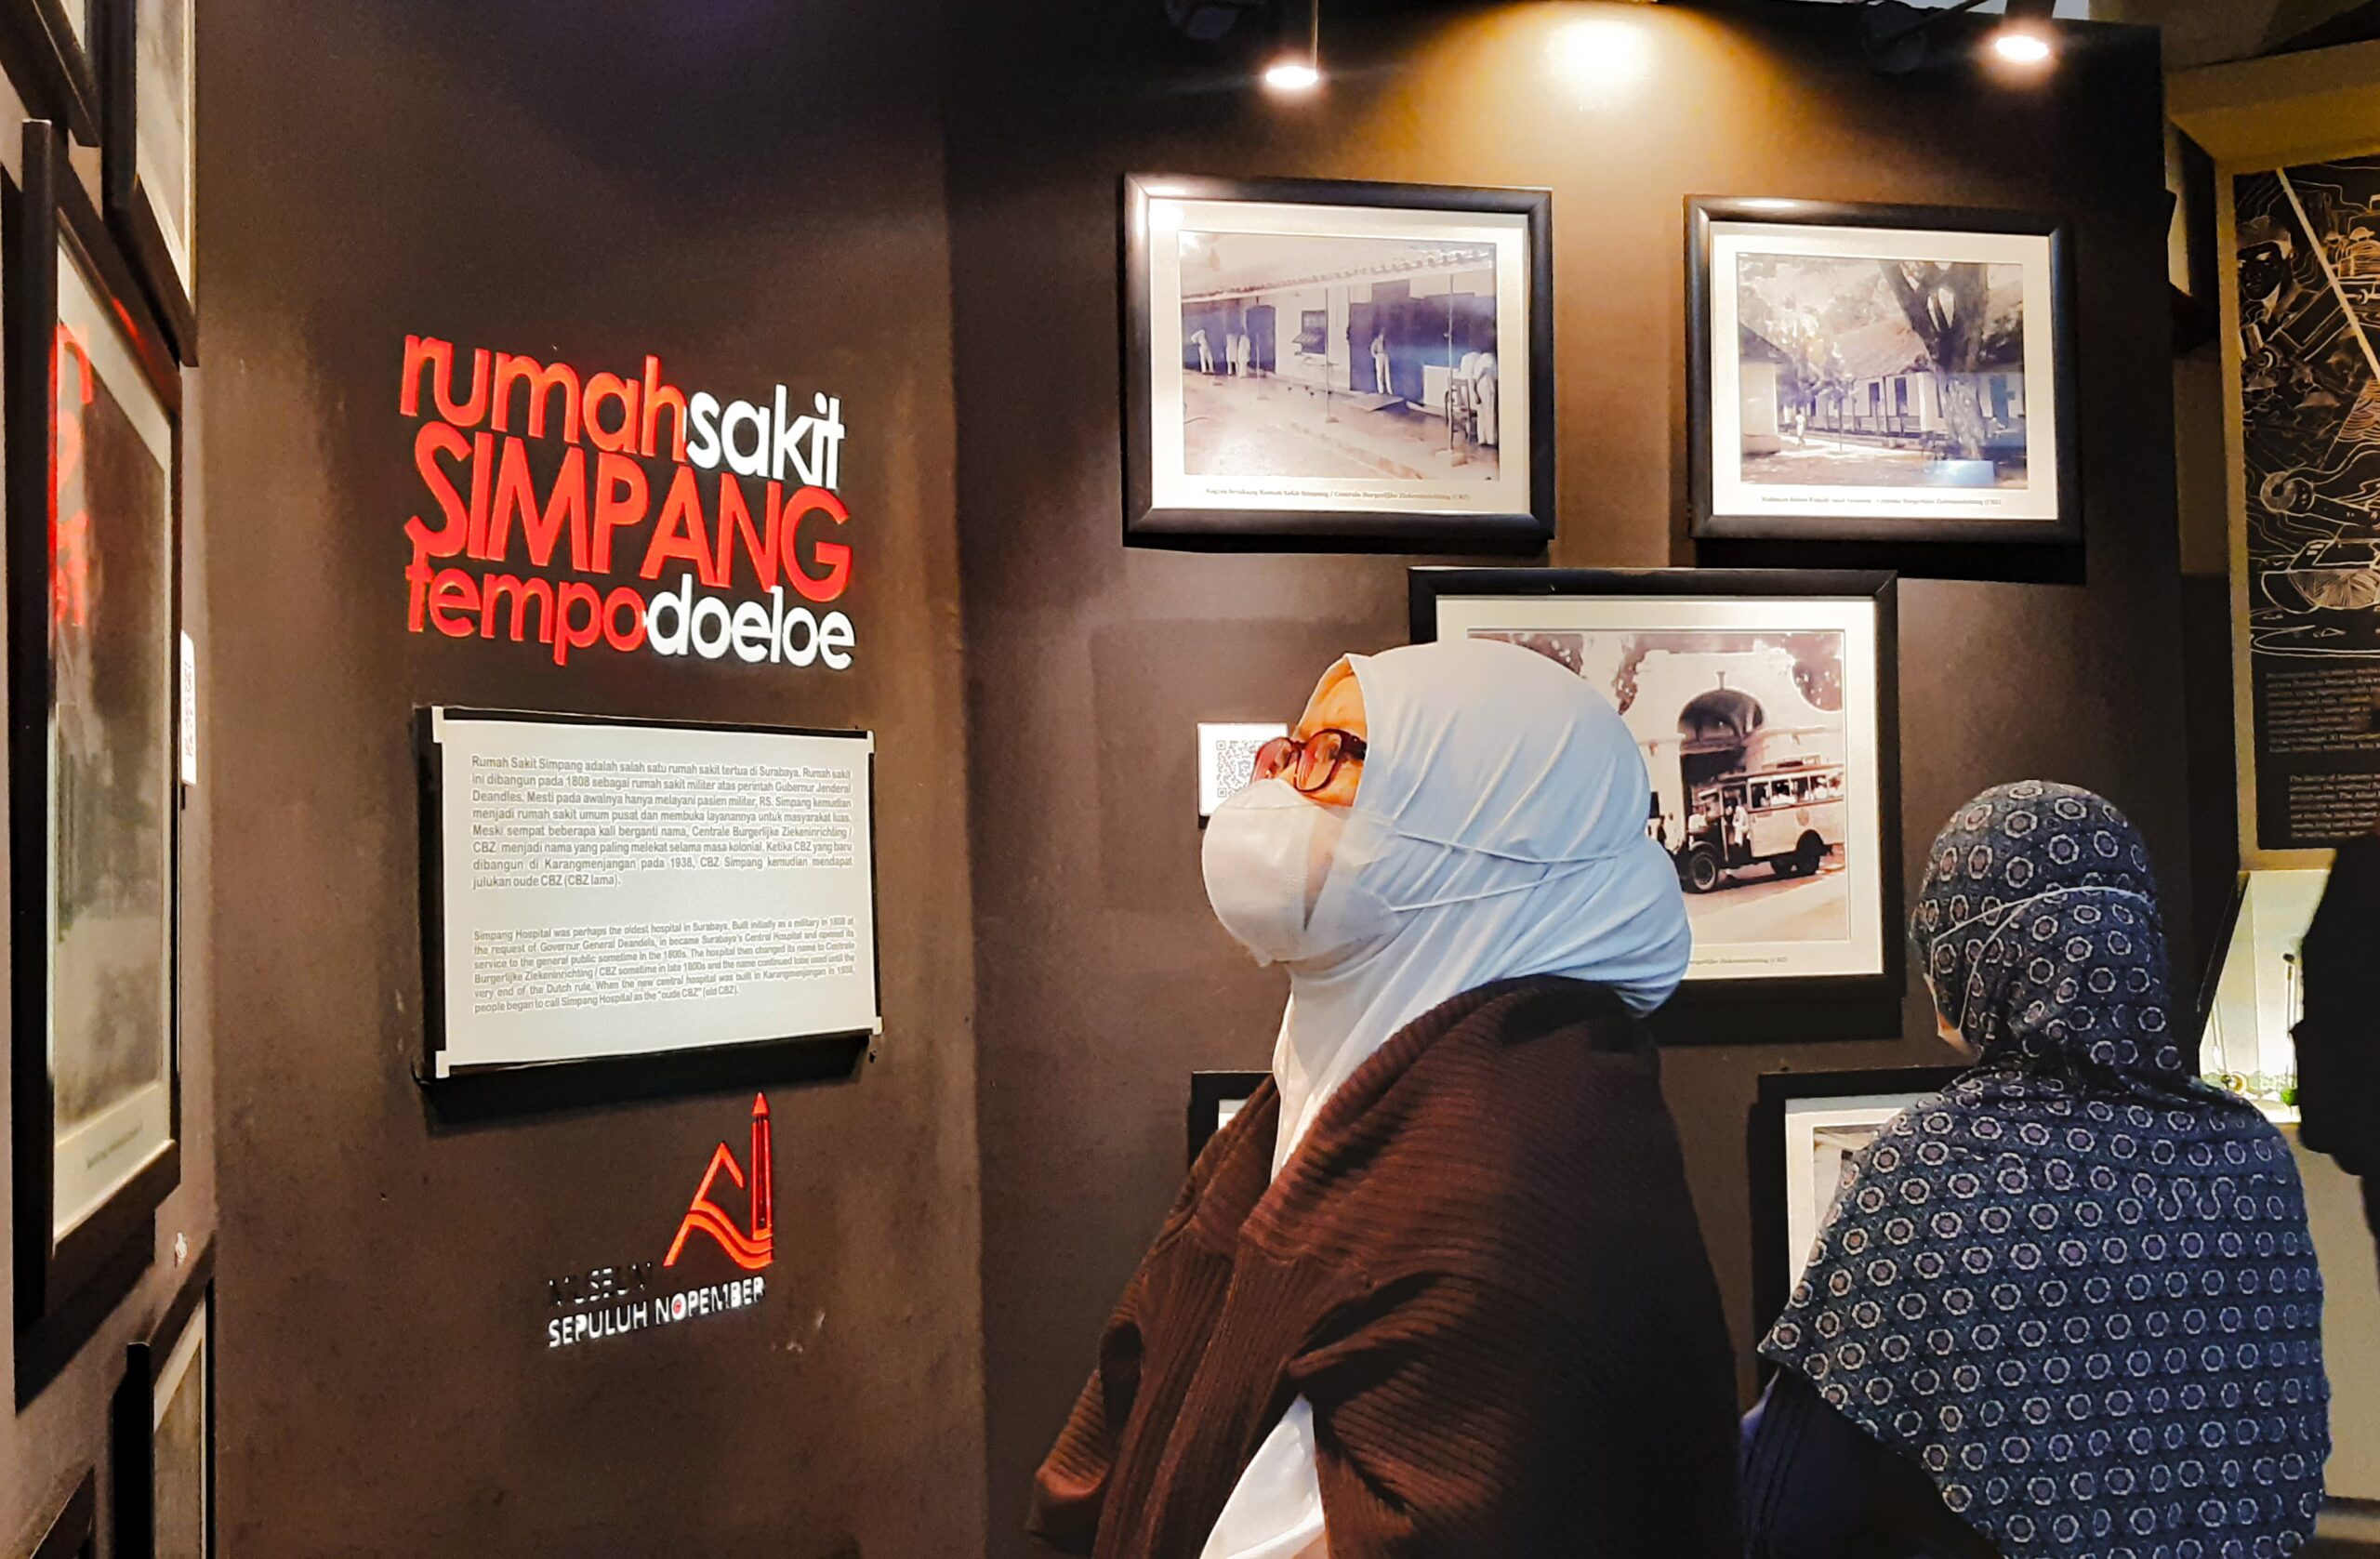 Salah seorang pengunjung nampak memperhatikan koleksi foto Rumah Sakit Simpang tempo doeloe di Museum 10 Nopember 2024, Sabtu (11/5/2024). Foto: Ikke magang suarasurabaya.net